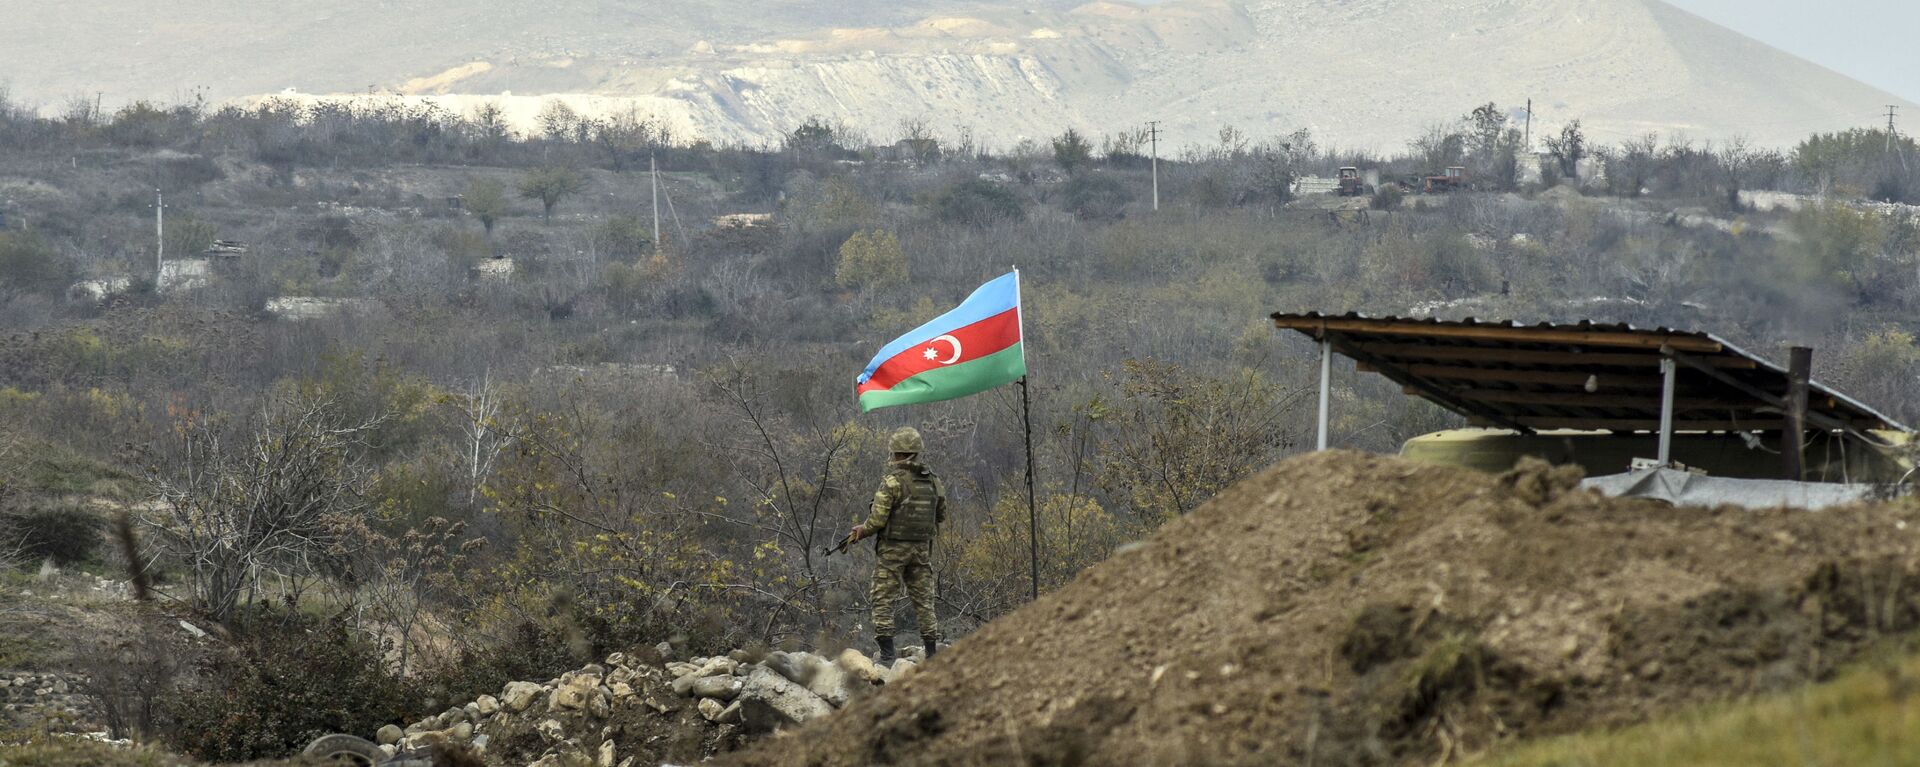 Военнослужащий азербайджанской армии, фото из архива - Sputnik Азербайджан, 1920, 02.03.2021